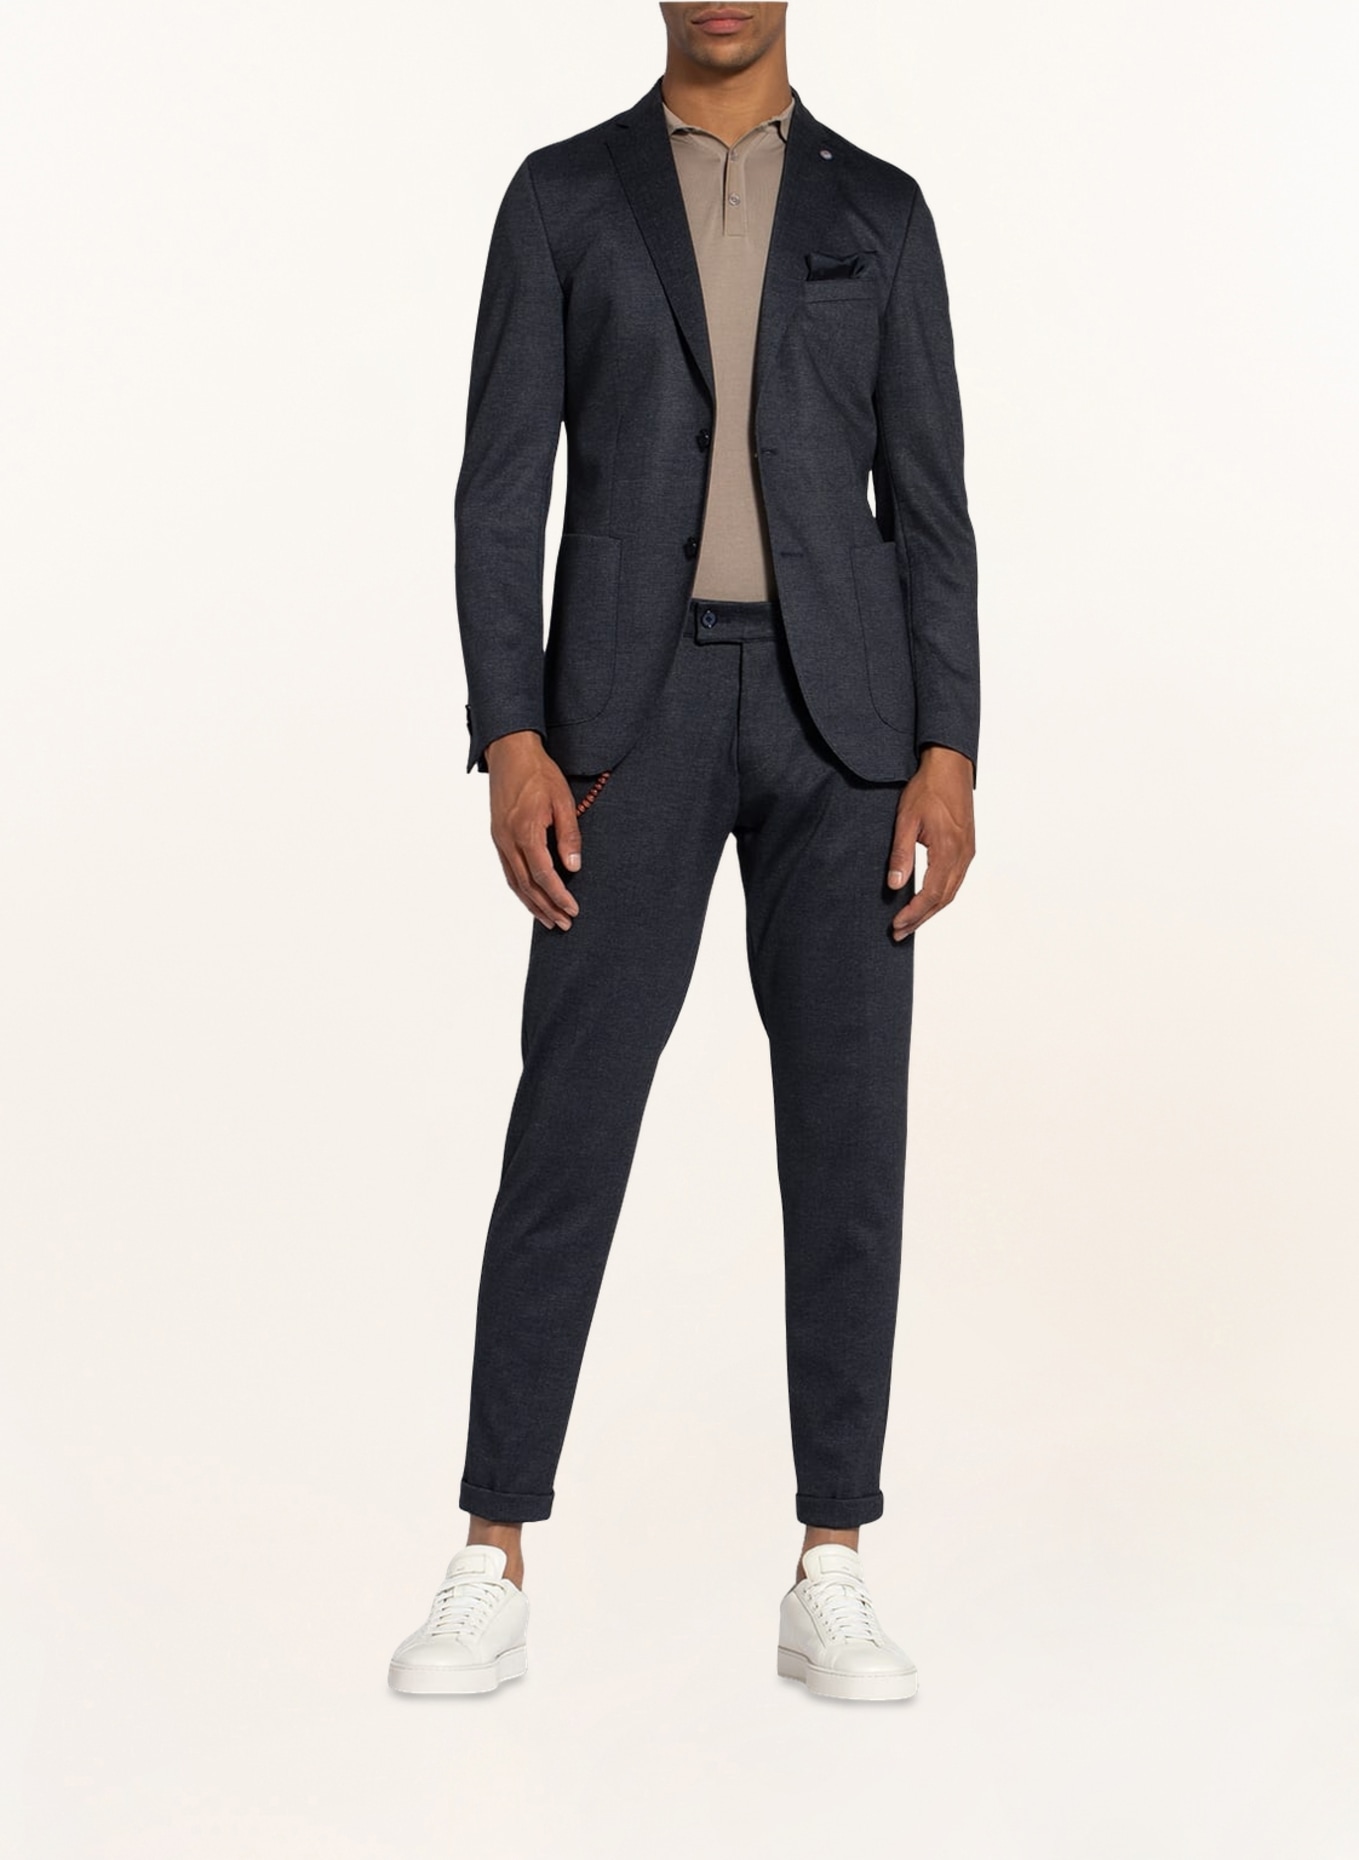 CG - CLUB of GENTS Suit trousers CONN Super slim fit, Color: 63 BLAU DUNKEL (Image 2)